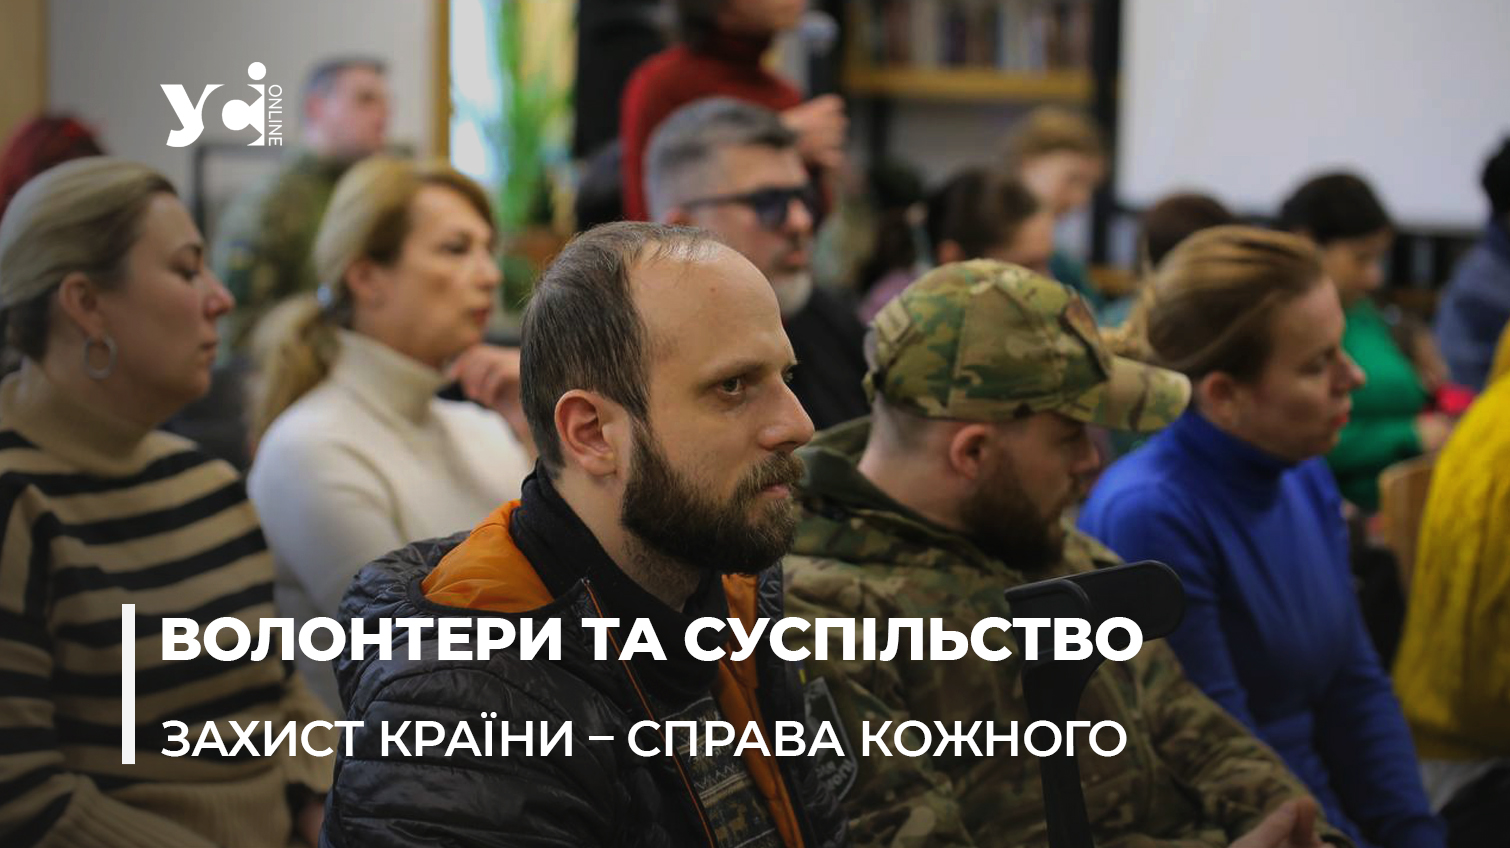 Кожен має взяти на себе ношу: в Одесі обговорили як люди можуть допомогти вистояти Україні (фото) «фото»